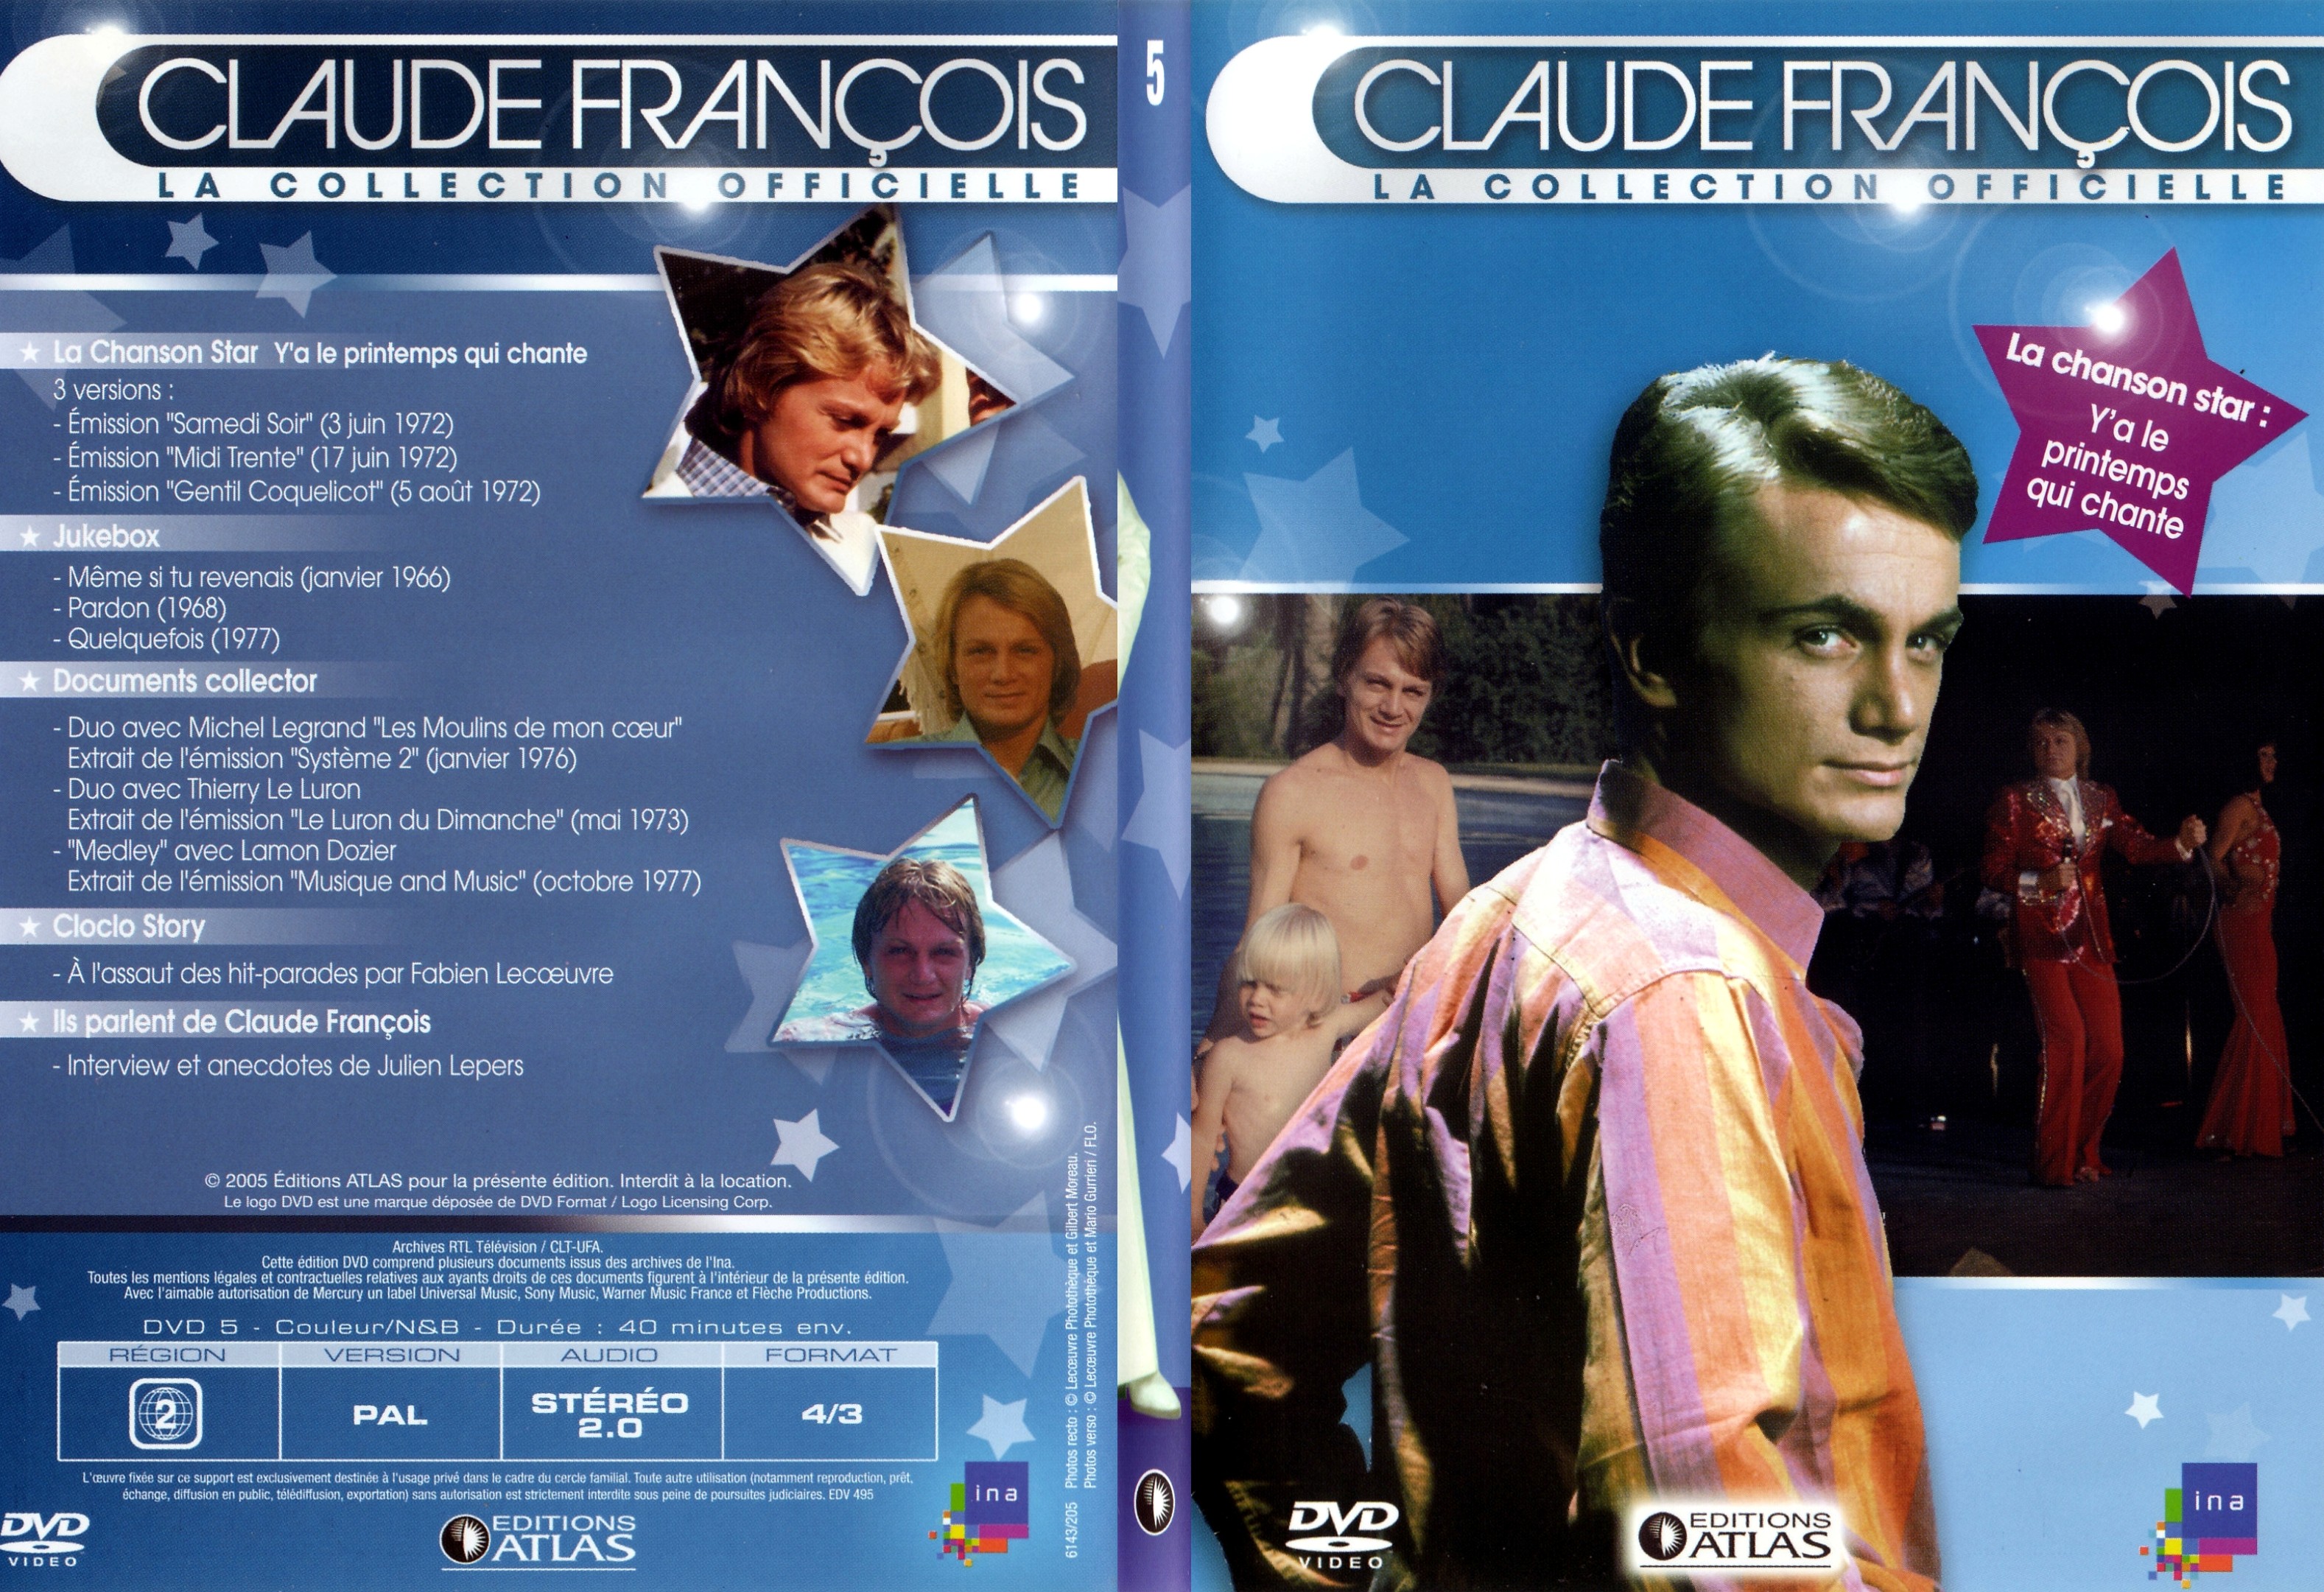 Jaquette DVD Claude francois le collection officielle vol 05 - SLIM